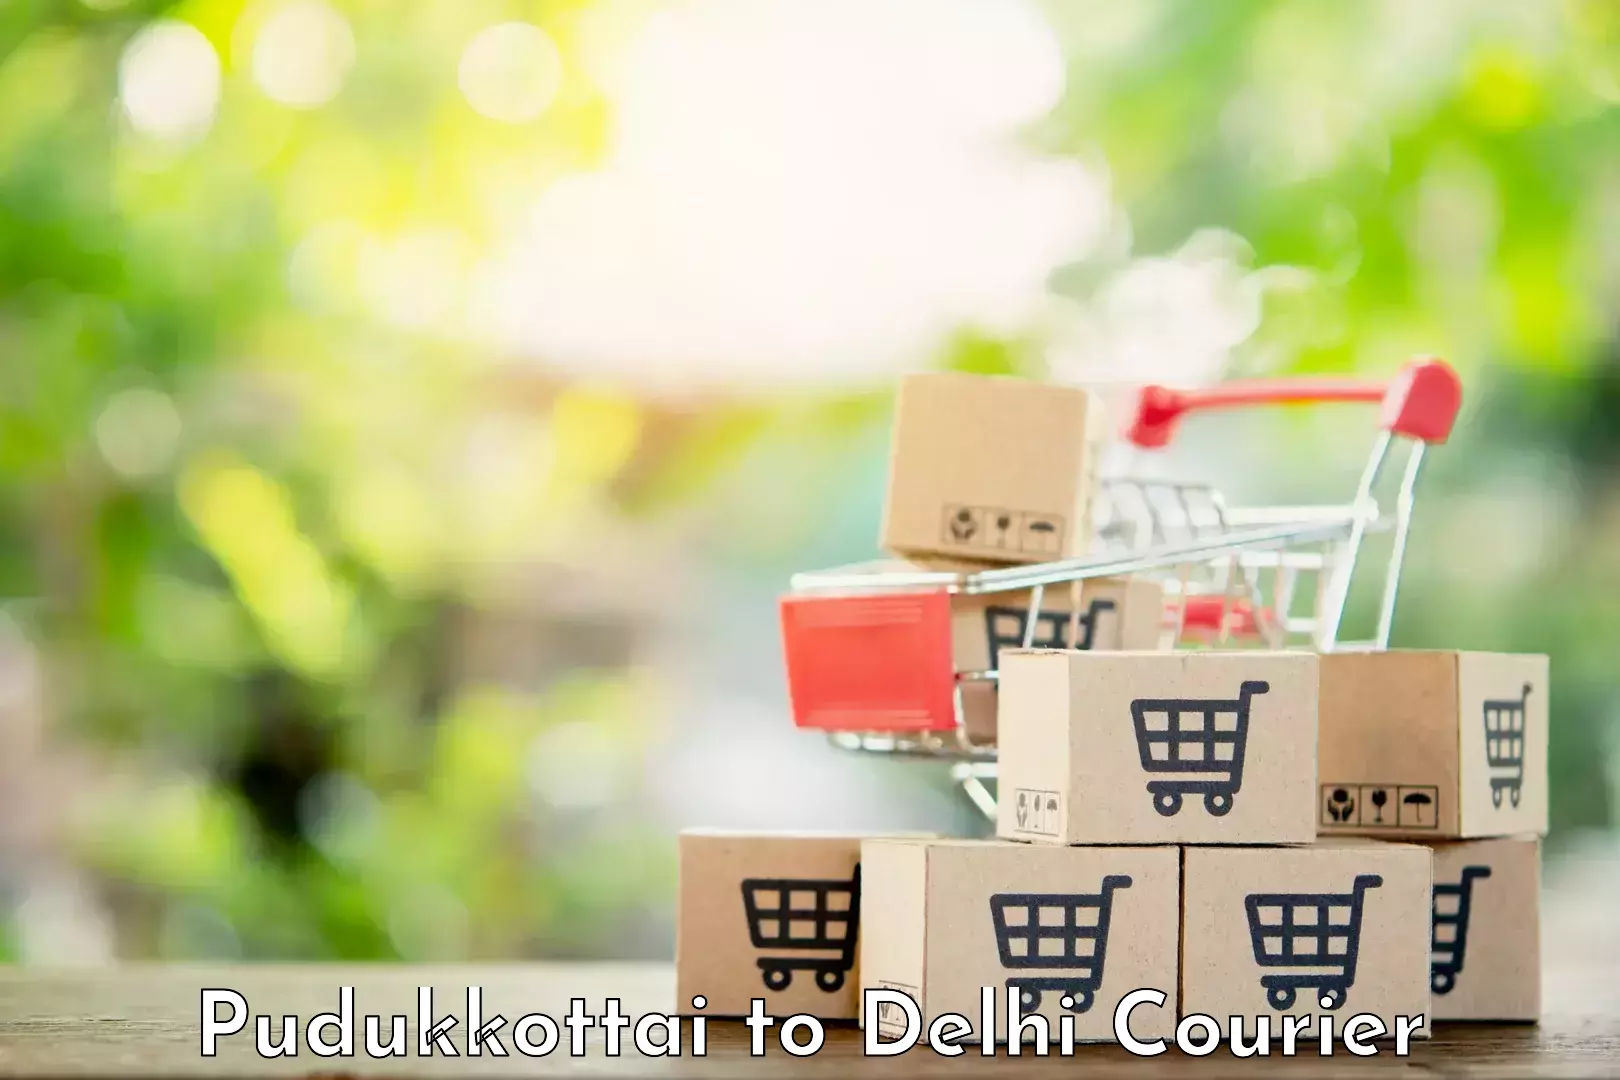 Premium courier services Pudukkottai to Subhash Nagar